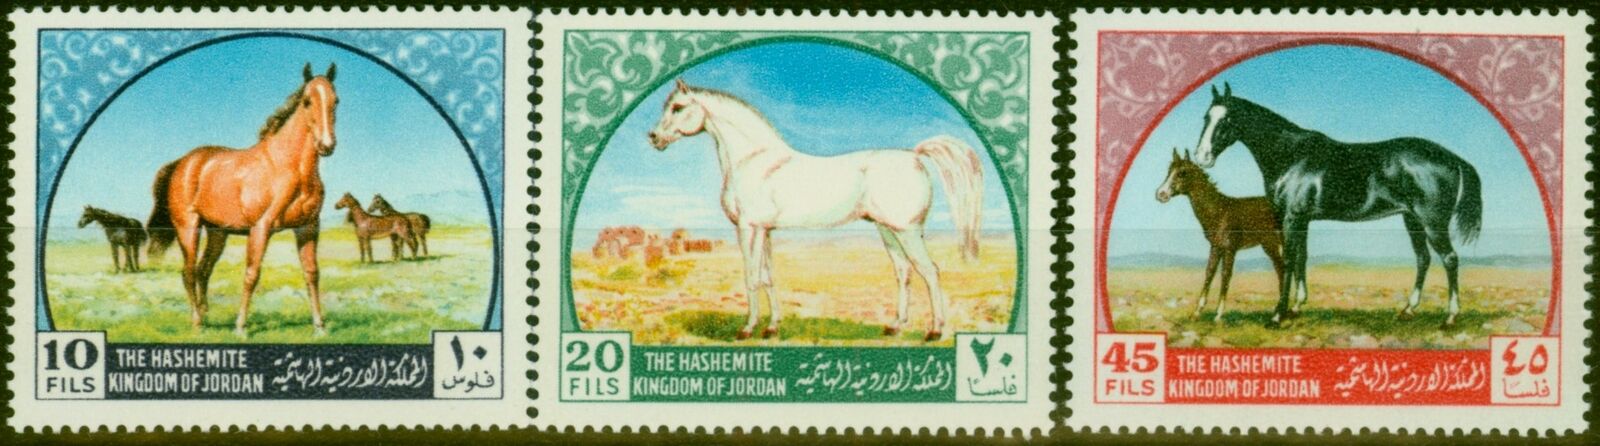 Jordan 1969 - Cai arabi, serie neuzata